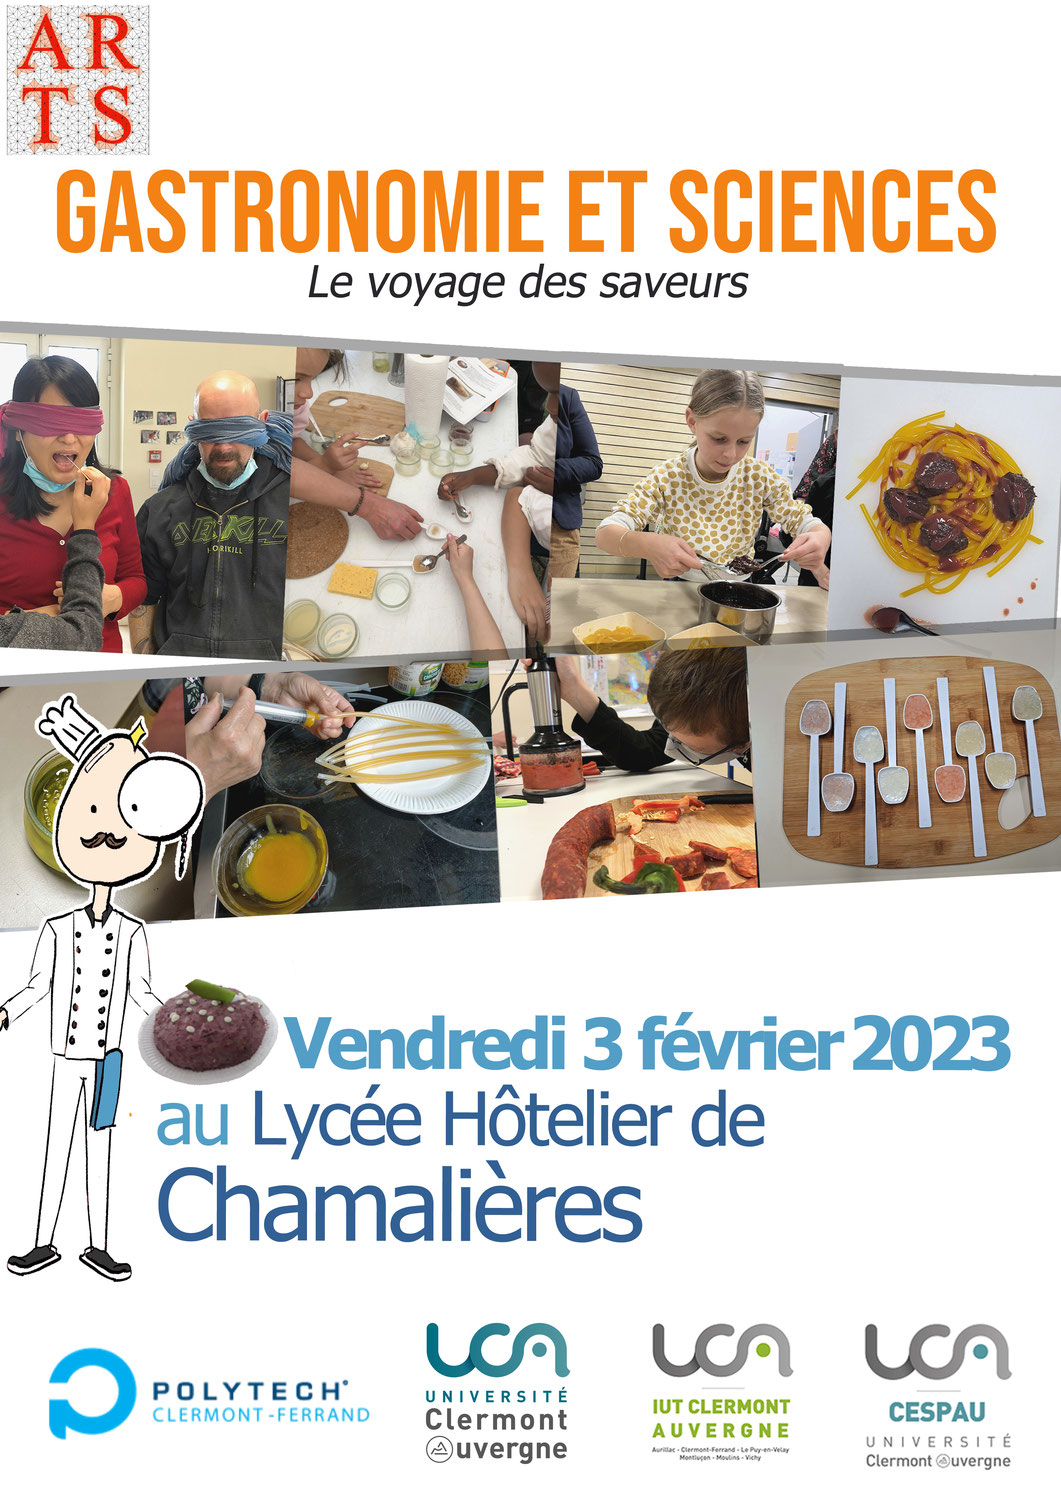 Gastronomie et Sciences, "Le voyage des saveurs", le 3 février 2023 au Lycée Hôtelier de Chamalières